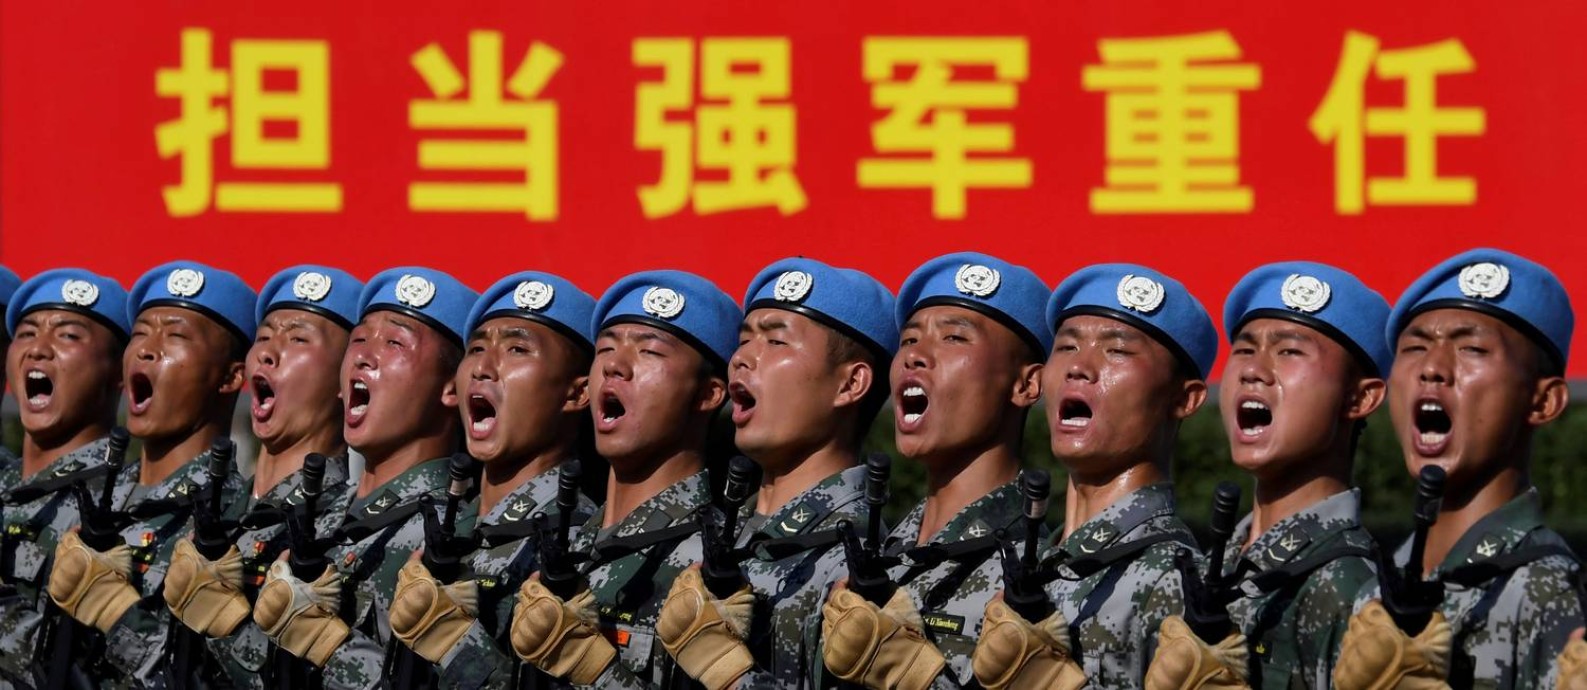 Militares chineses ensaiam para o desfile que na terça-feira, 1º de outubro, celebrará os 70 anos da proclamação da República Popular da China Foto: Naohiko Hatta / REUTERS